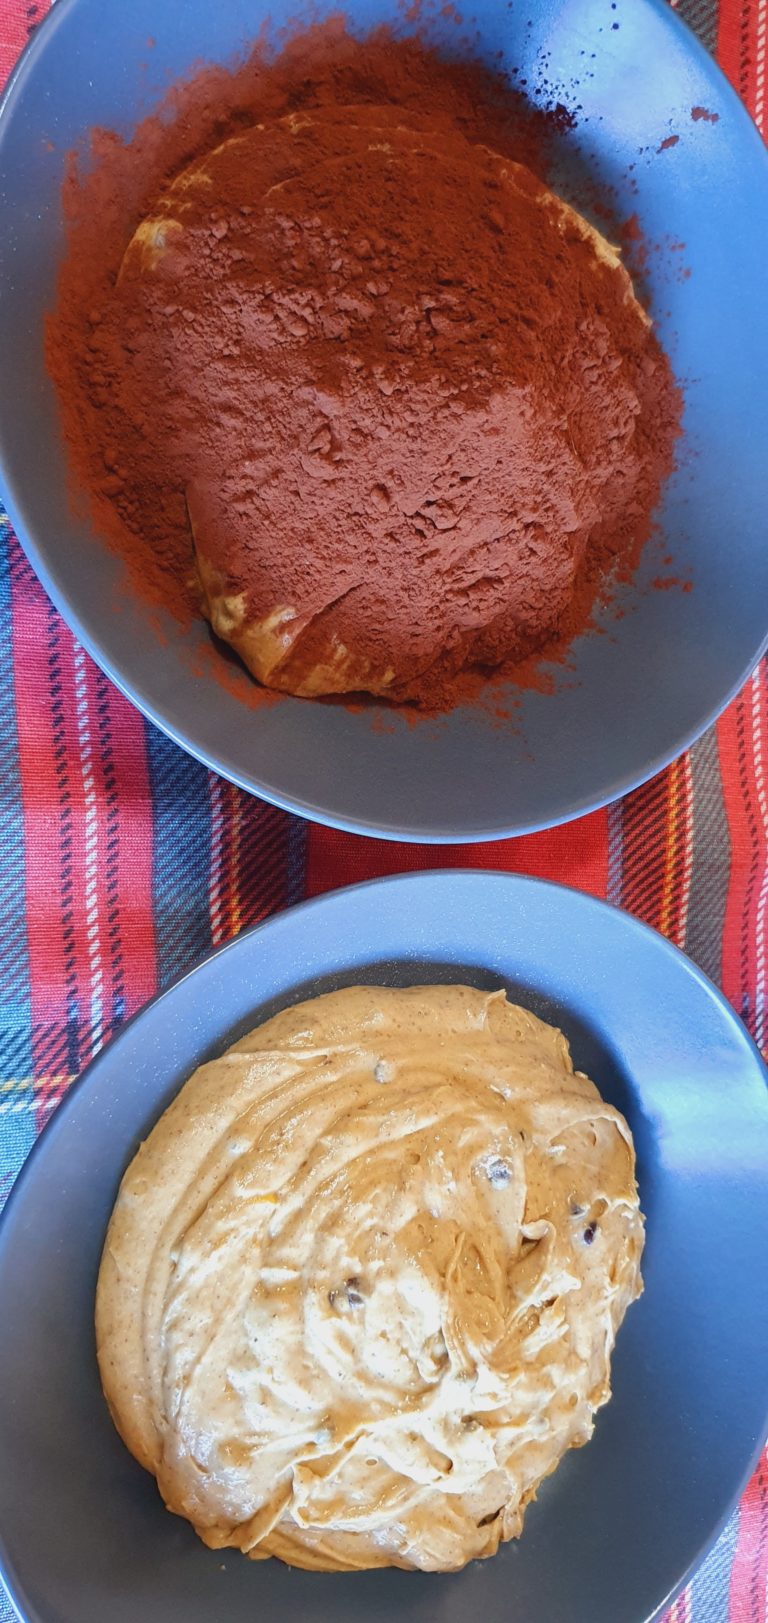 Preparazione torta al cioccolato senza burro - step 3